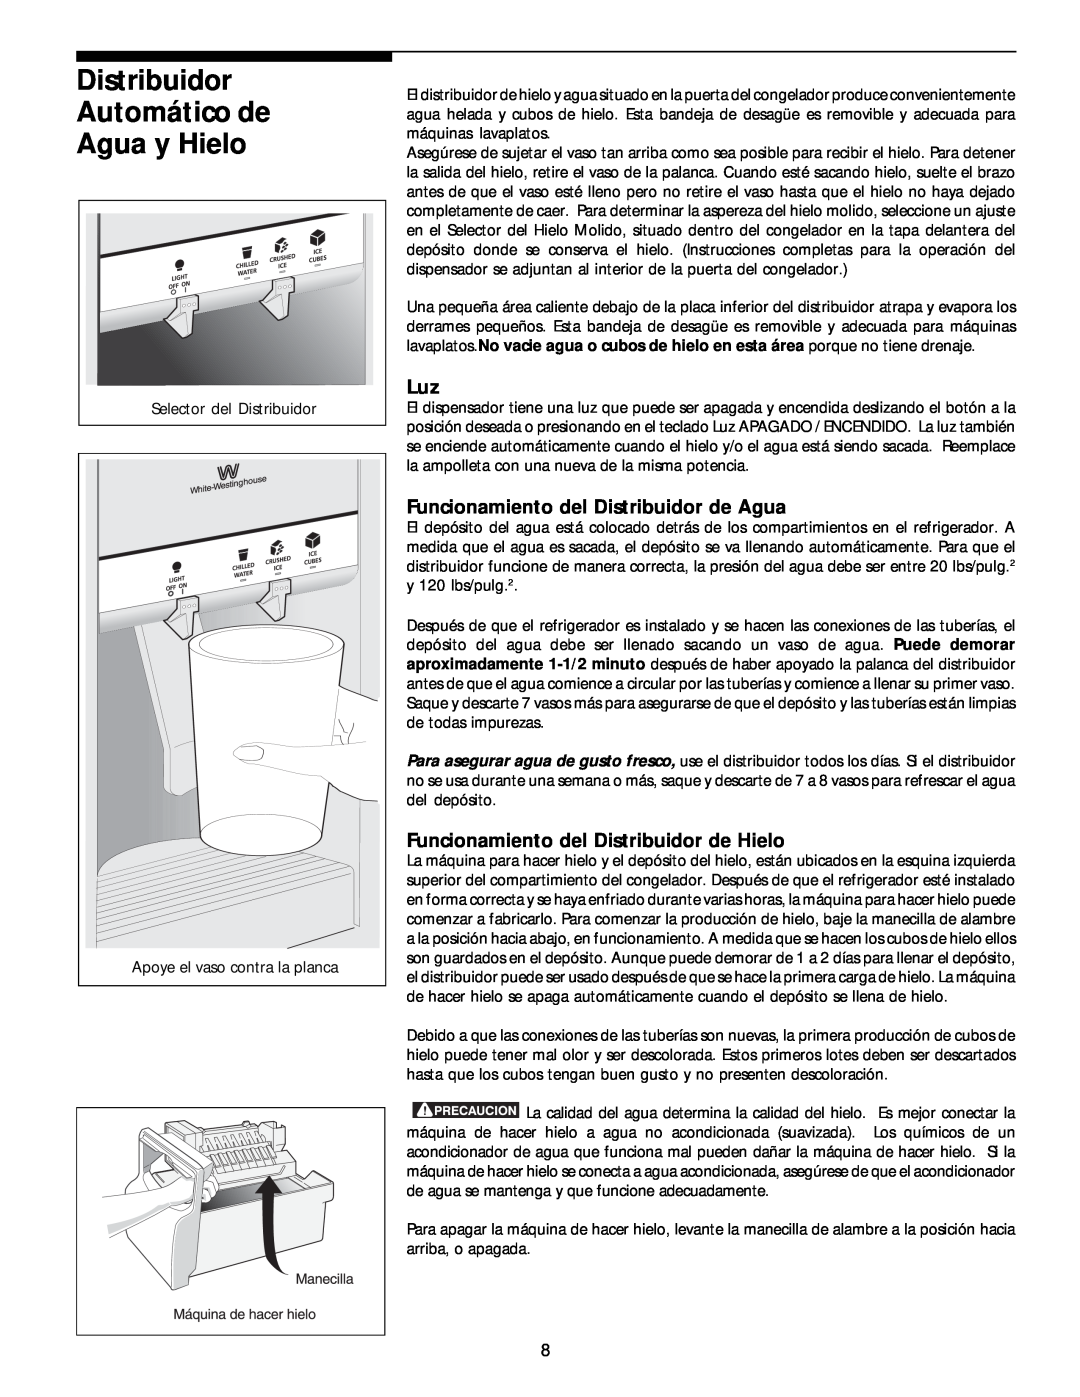 White-Westinghouse 218954301 manual Distribuidor Automático de Agua y Hielo, Funcionamiento del Distribuidor de Agua 